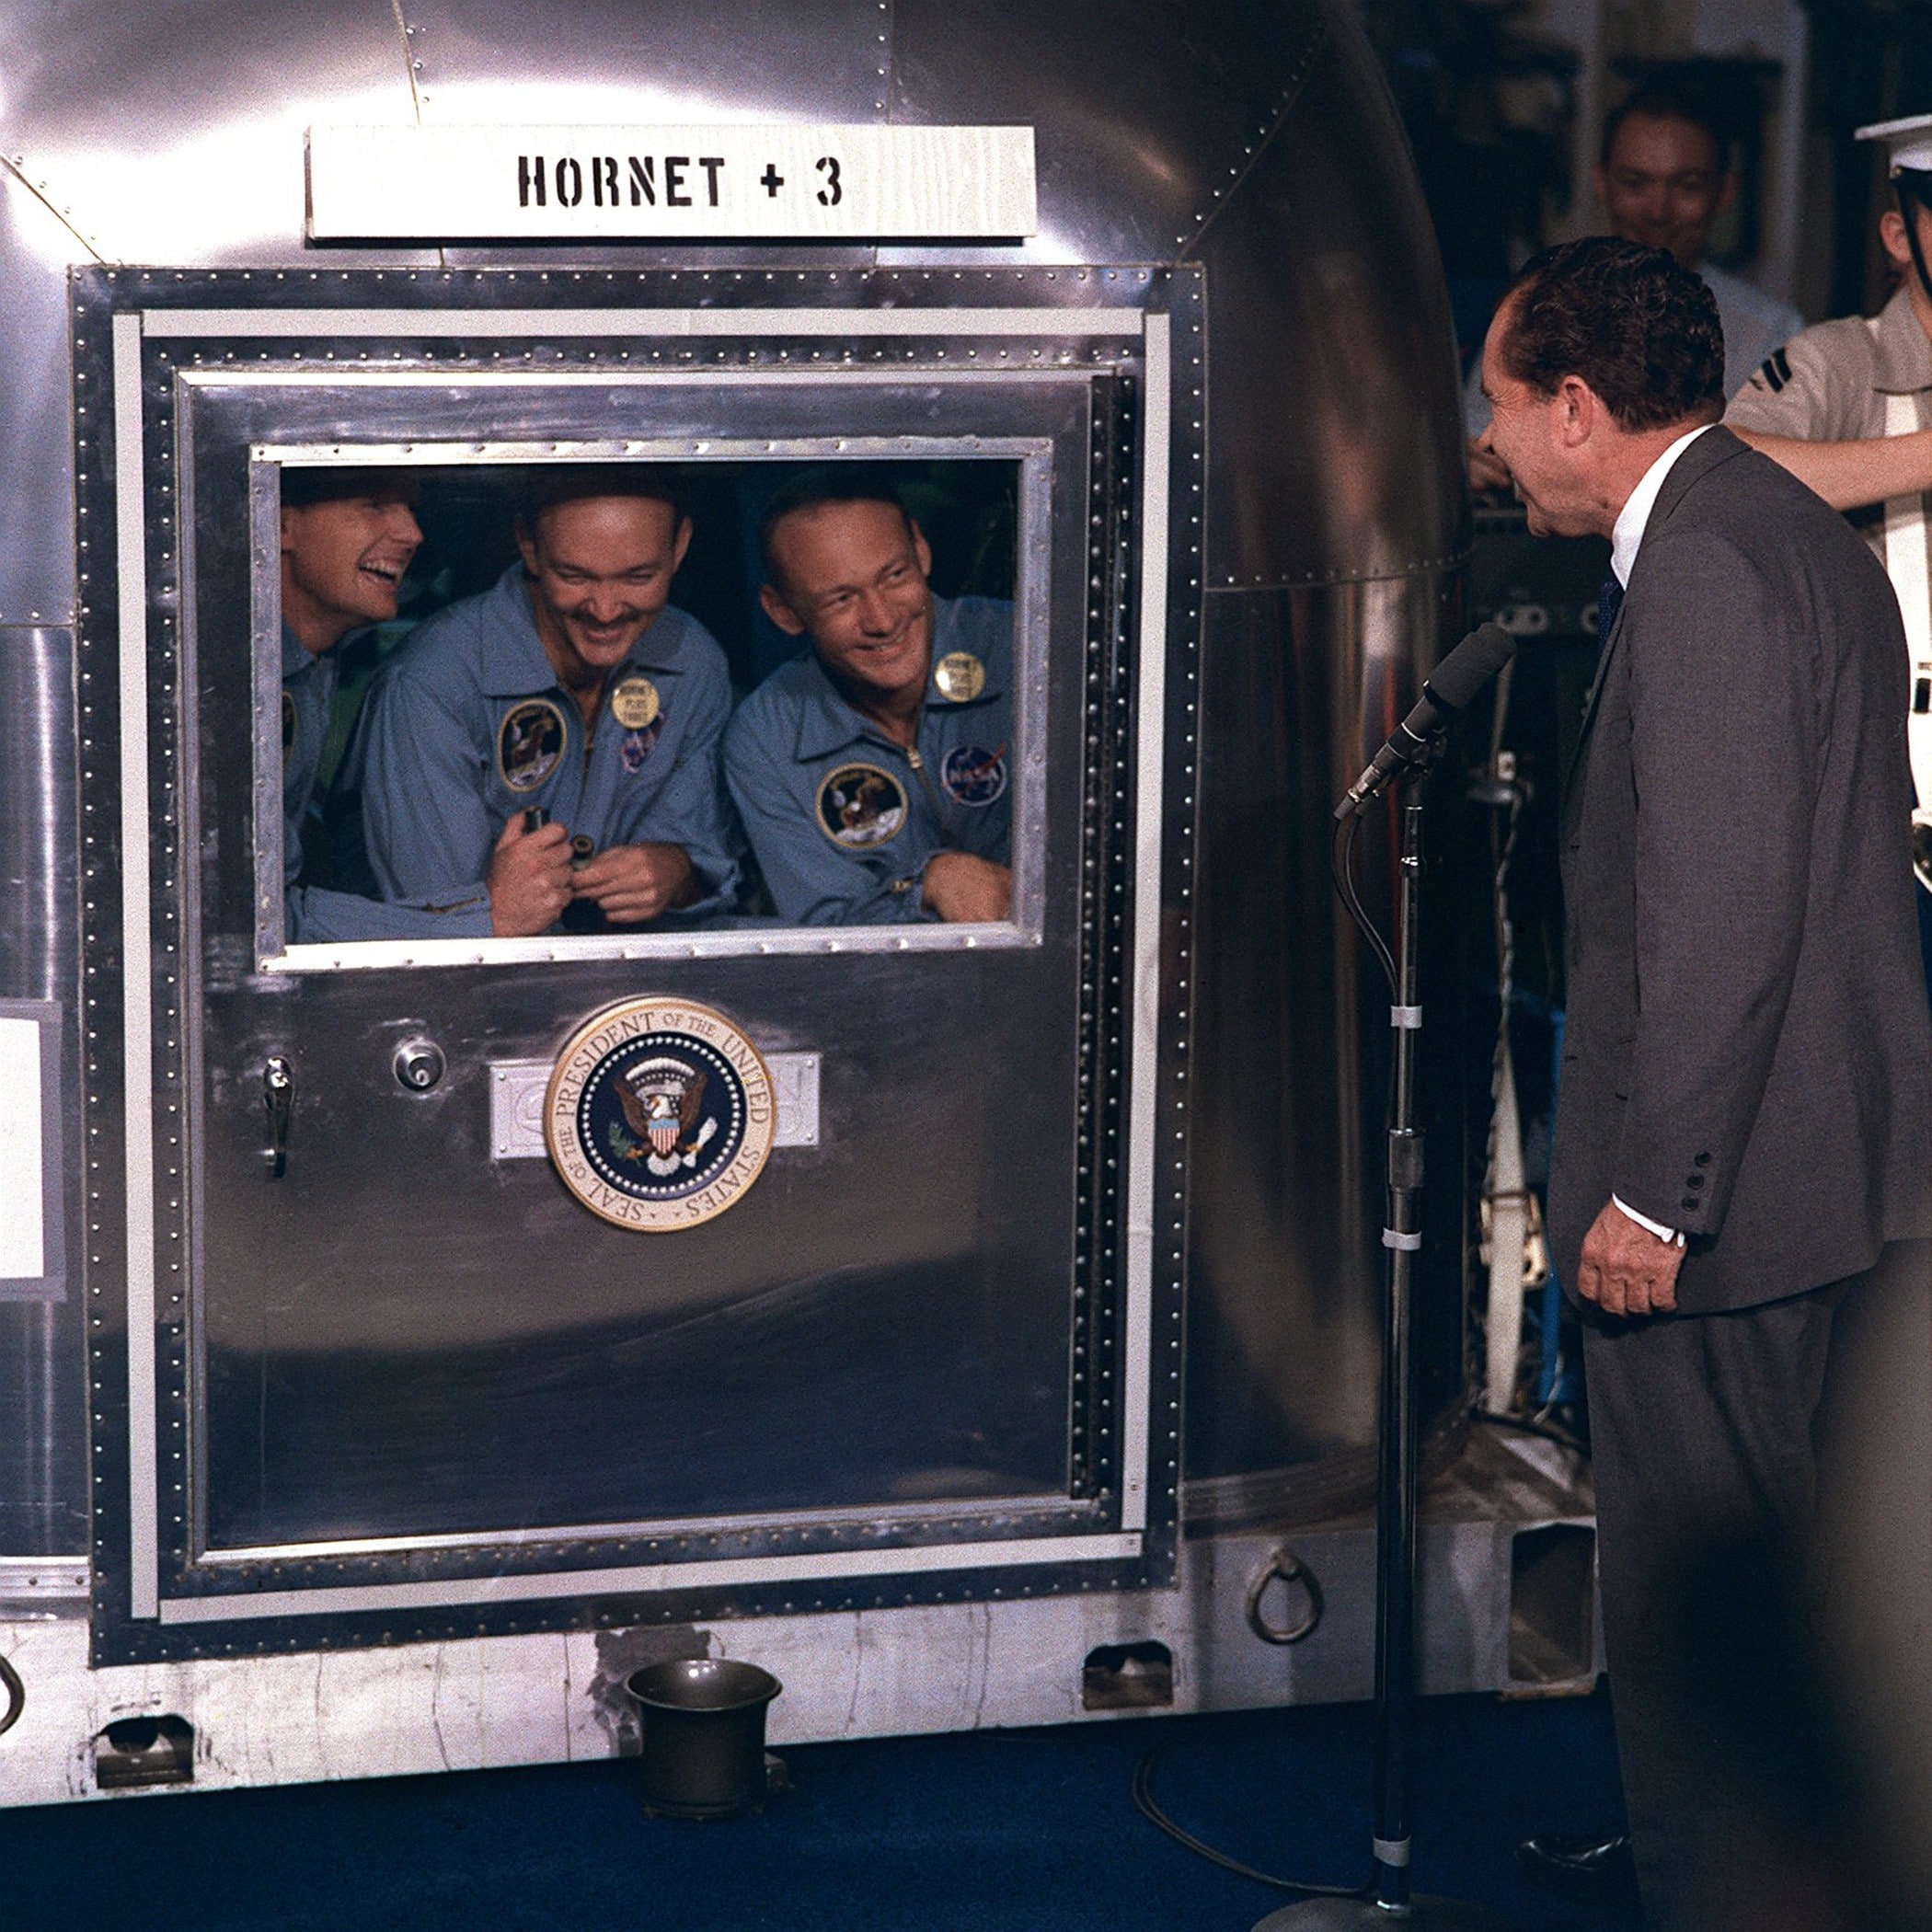 Luglio 1969, il presidente accoglie personalmente i tre astronauti tornati dalla Luna